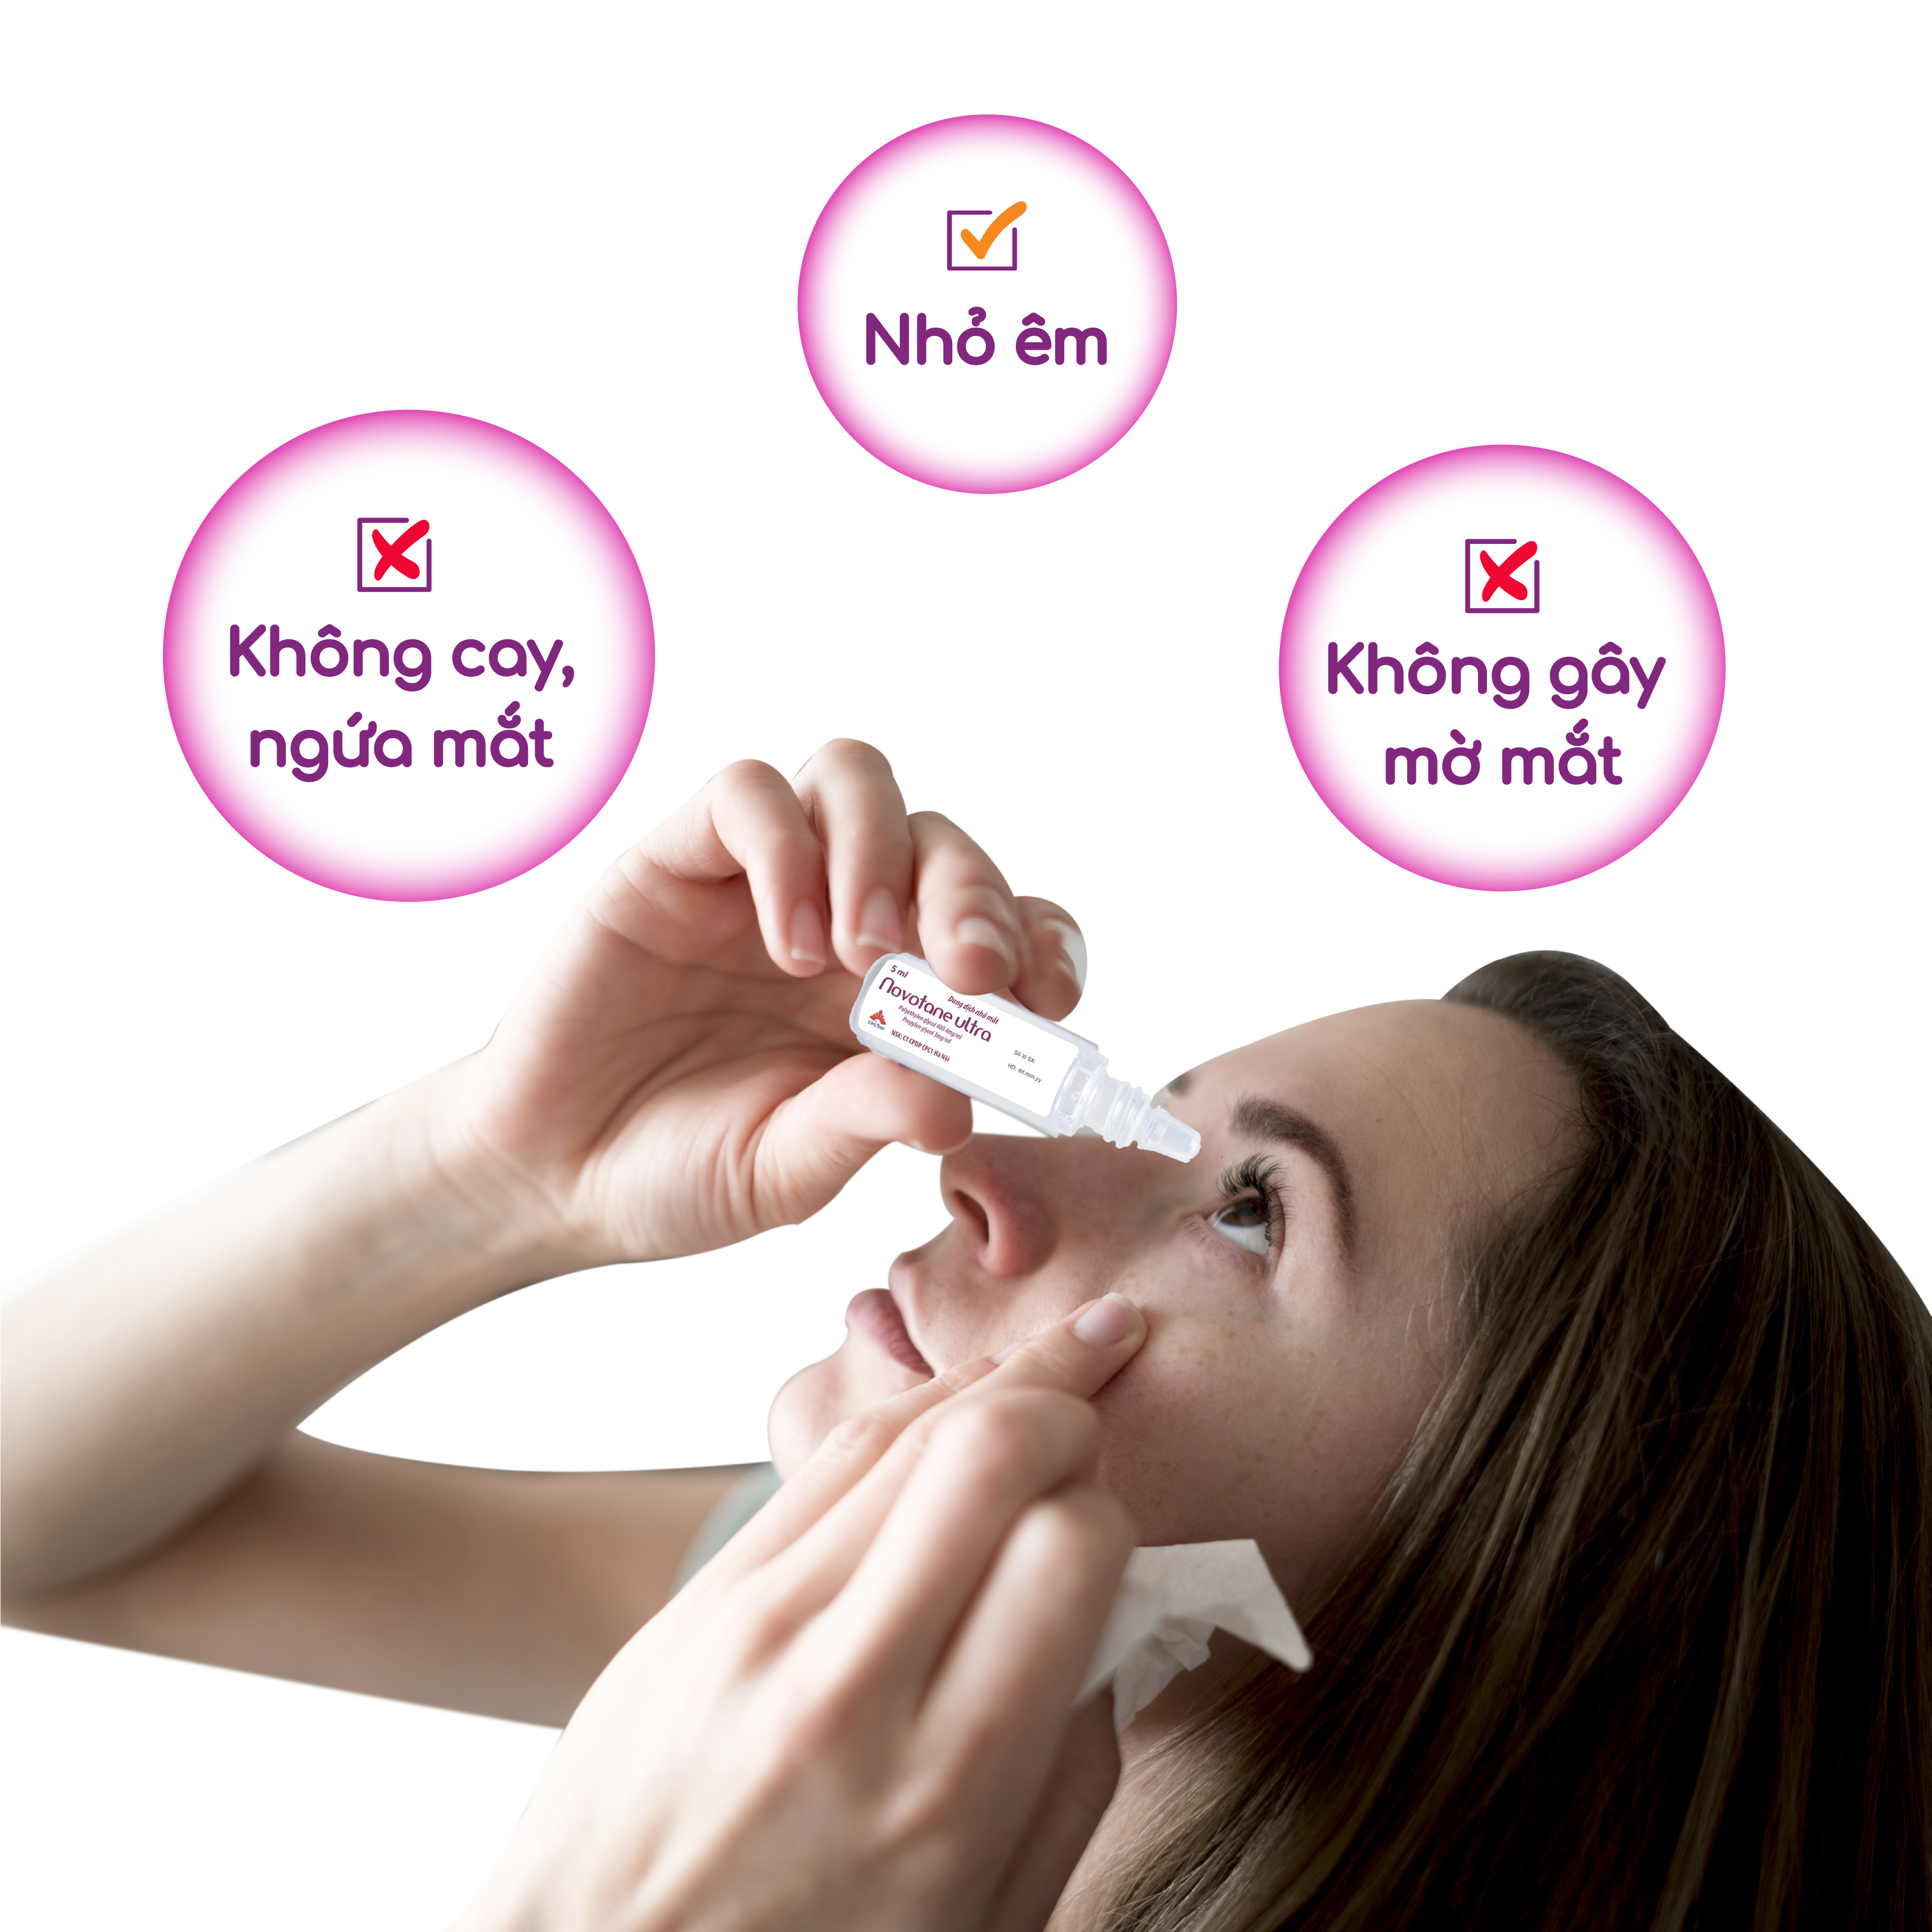 Nước mắt nhân tạo Novotane Ultra 1ml giúp bảo vệ mắt, dưỡng ẩm, giảm khô, giảm mỏi mắt